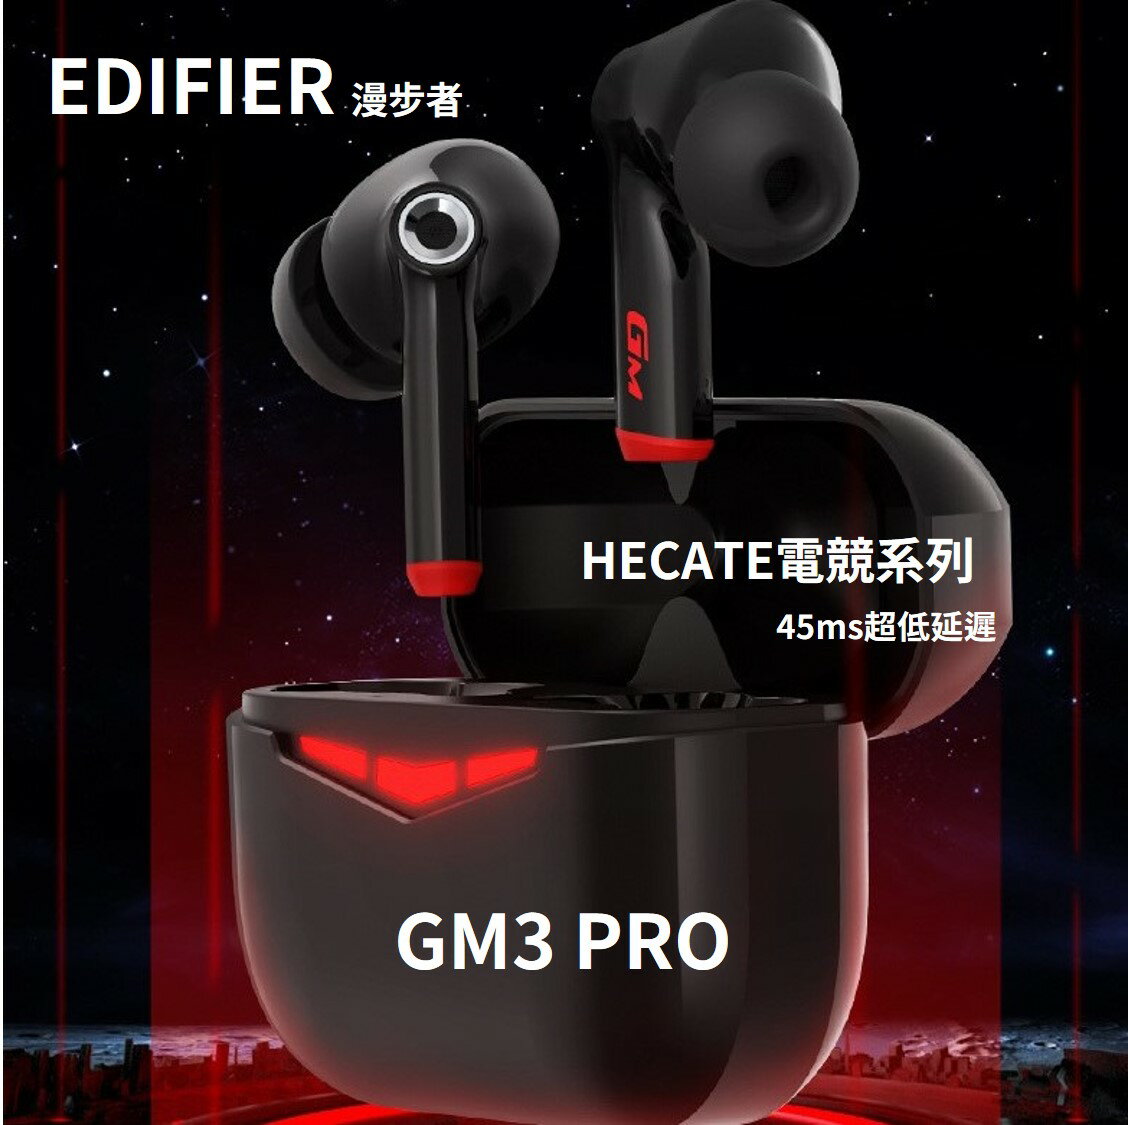 🔥EDIFIER 漫步者 HECATE電競系列 GM3 PRO 無線藍牙耳機 遊戲模式 45ms低延遲